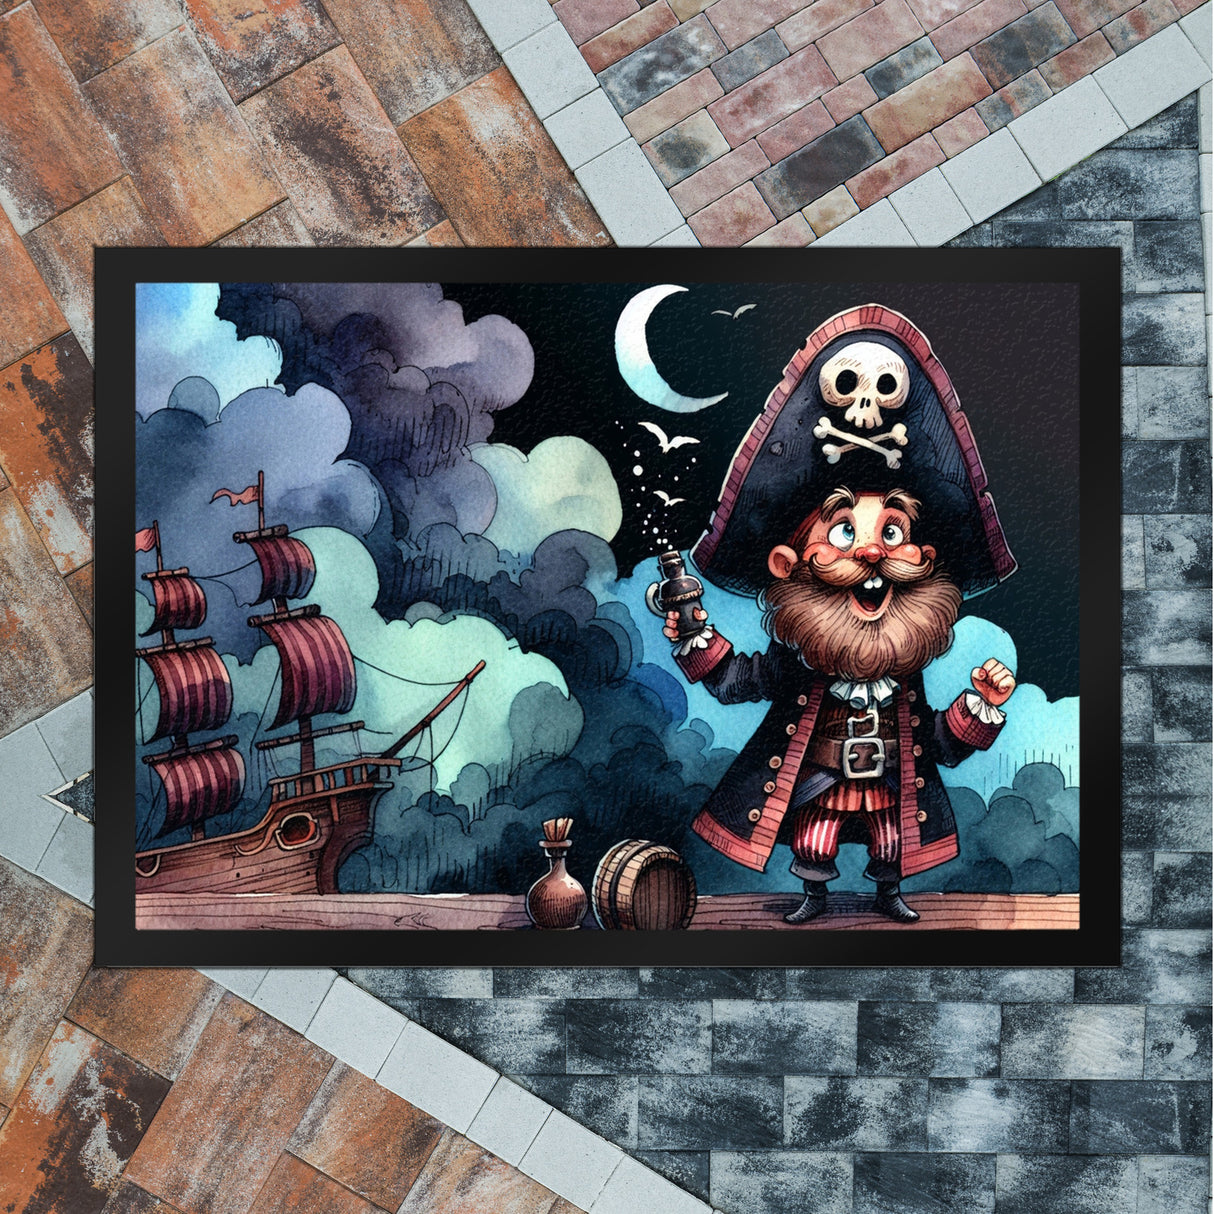 lustiger Pirat Fußmatte in 35x50 cm